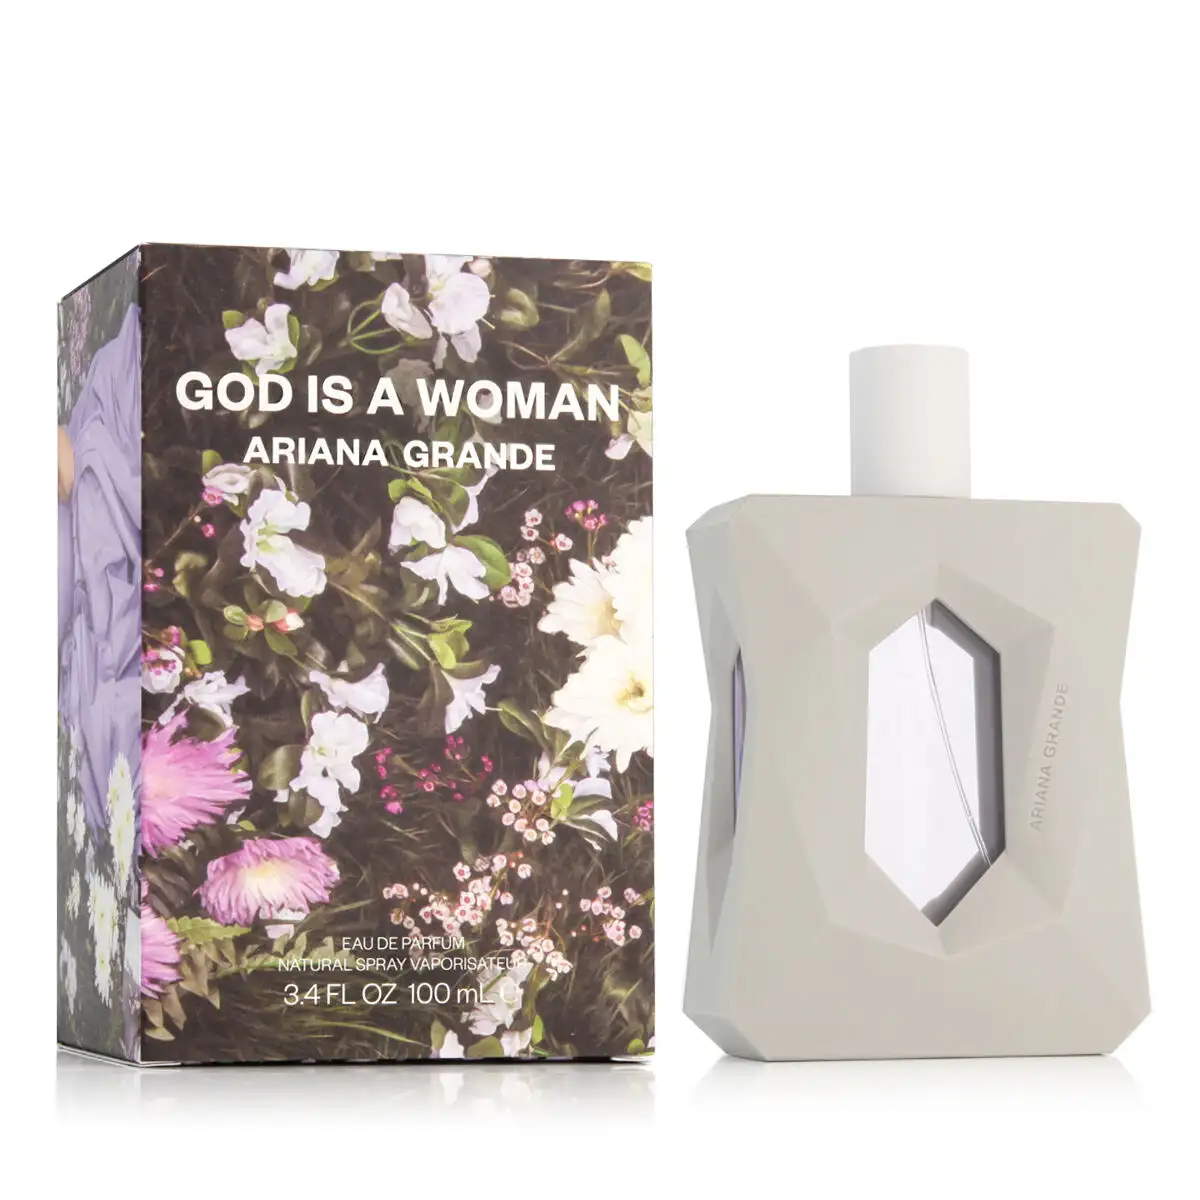 Parfum femme ariana grande edp god is a woman 100 ml_9414. DIAYTAR SENEGAL - Votre Passage vers l'Éclat et la Beauté. Explorez notre boutique en ligne et trouvez des produits qui subliment votre apparence et votre espace.